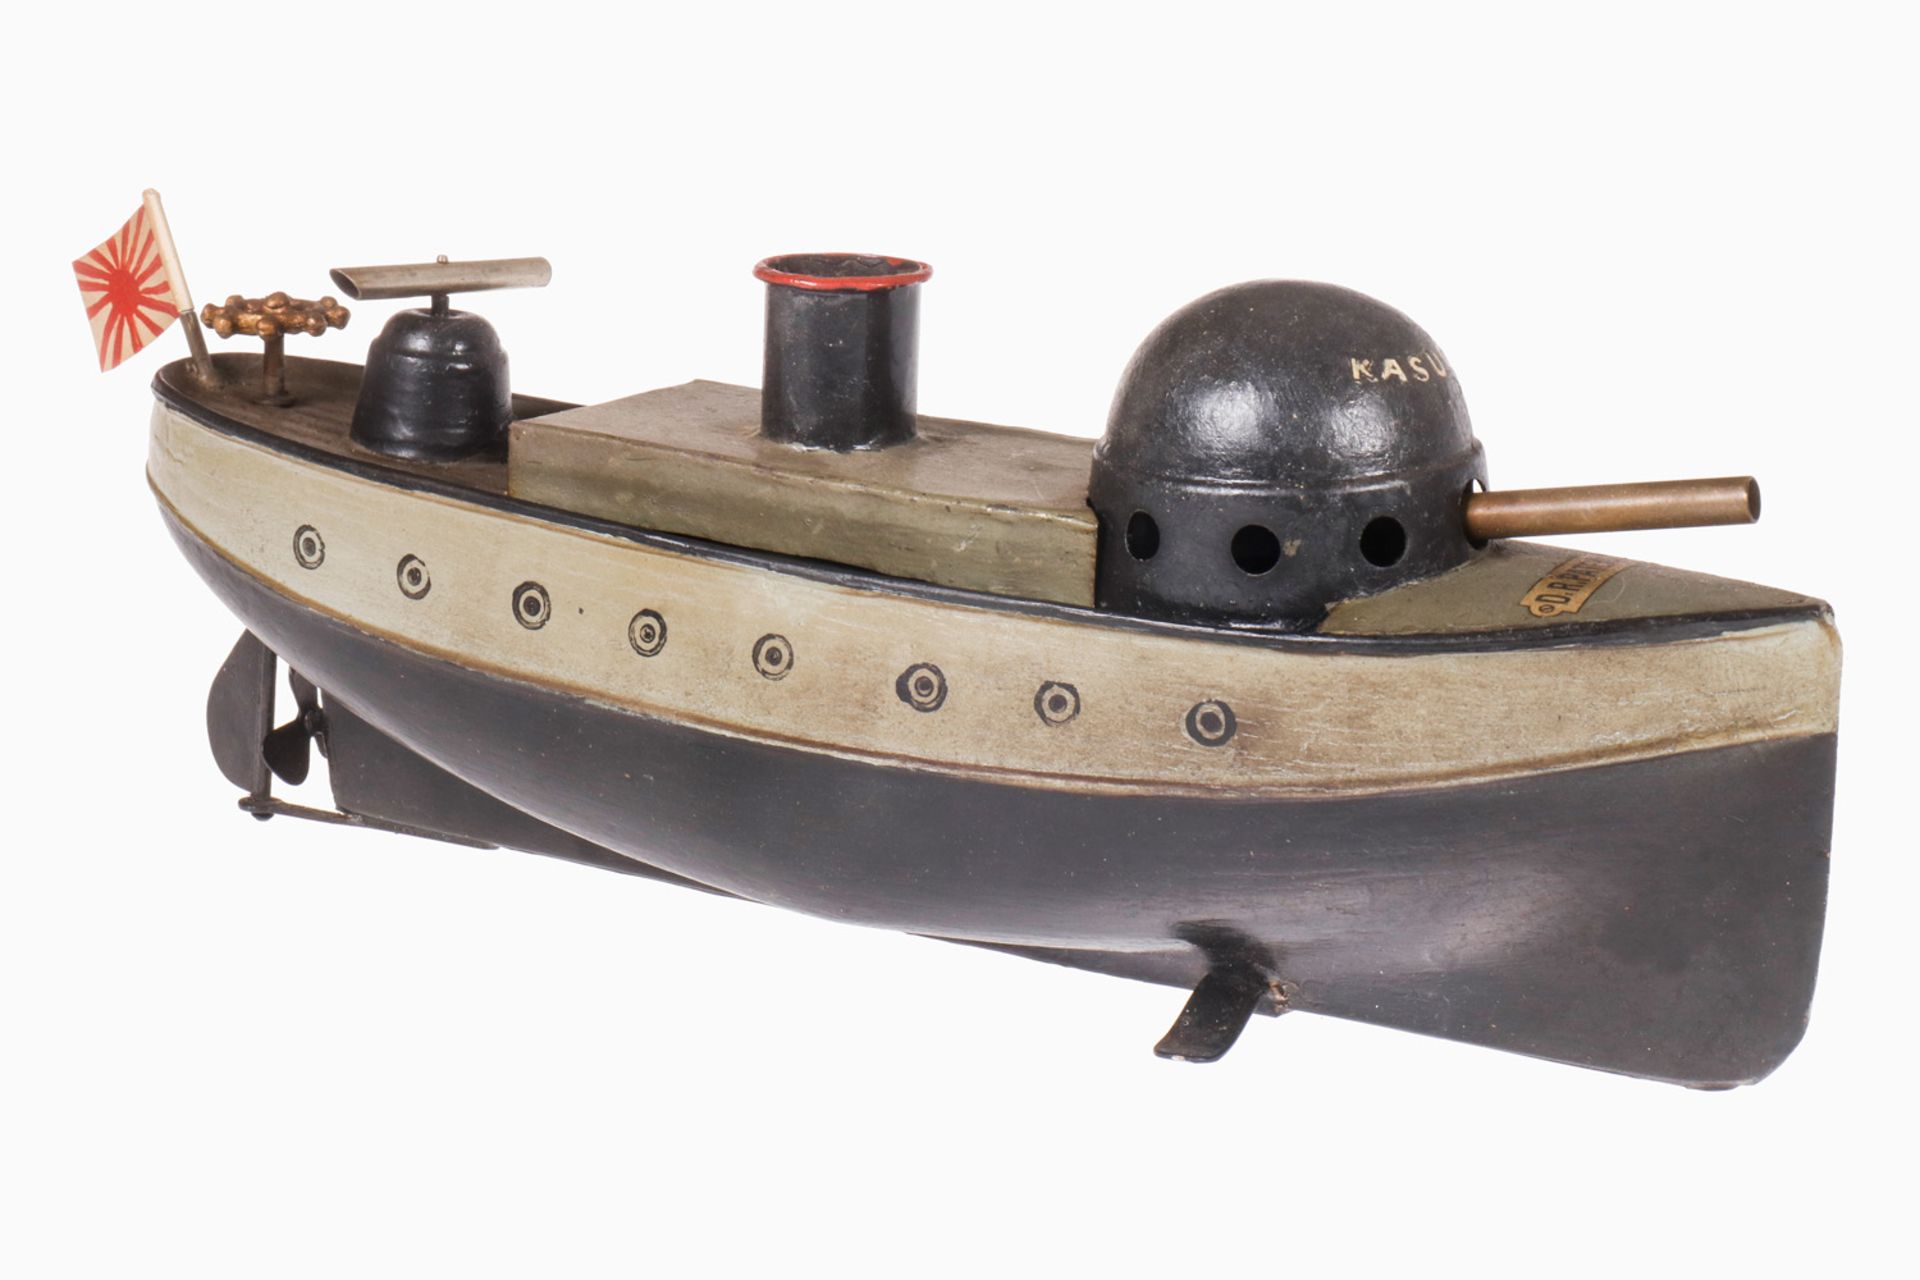 Bing Kanonenboot "Kasuga" 13804/1, uralt, HL, für Zündblättchenfeuerung, Uhrwerk def., meist